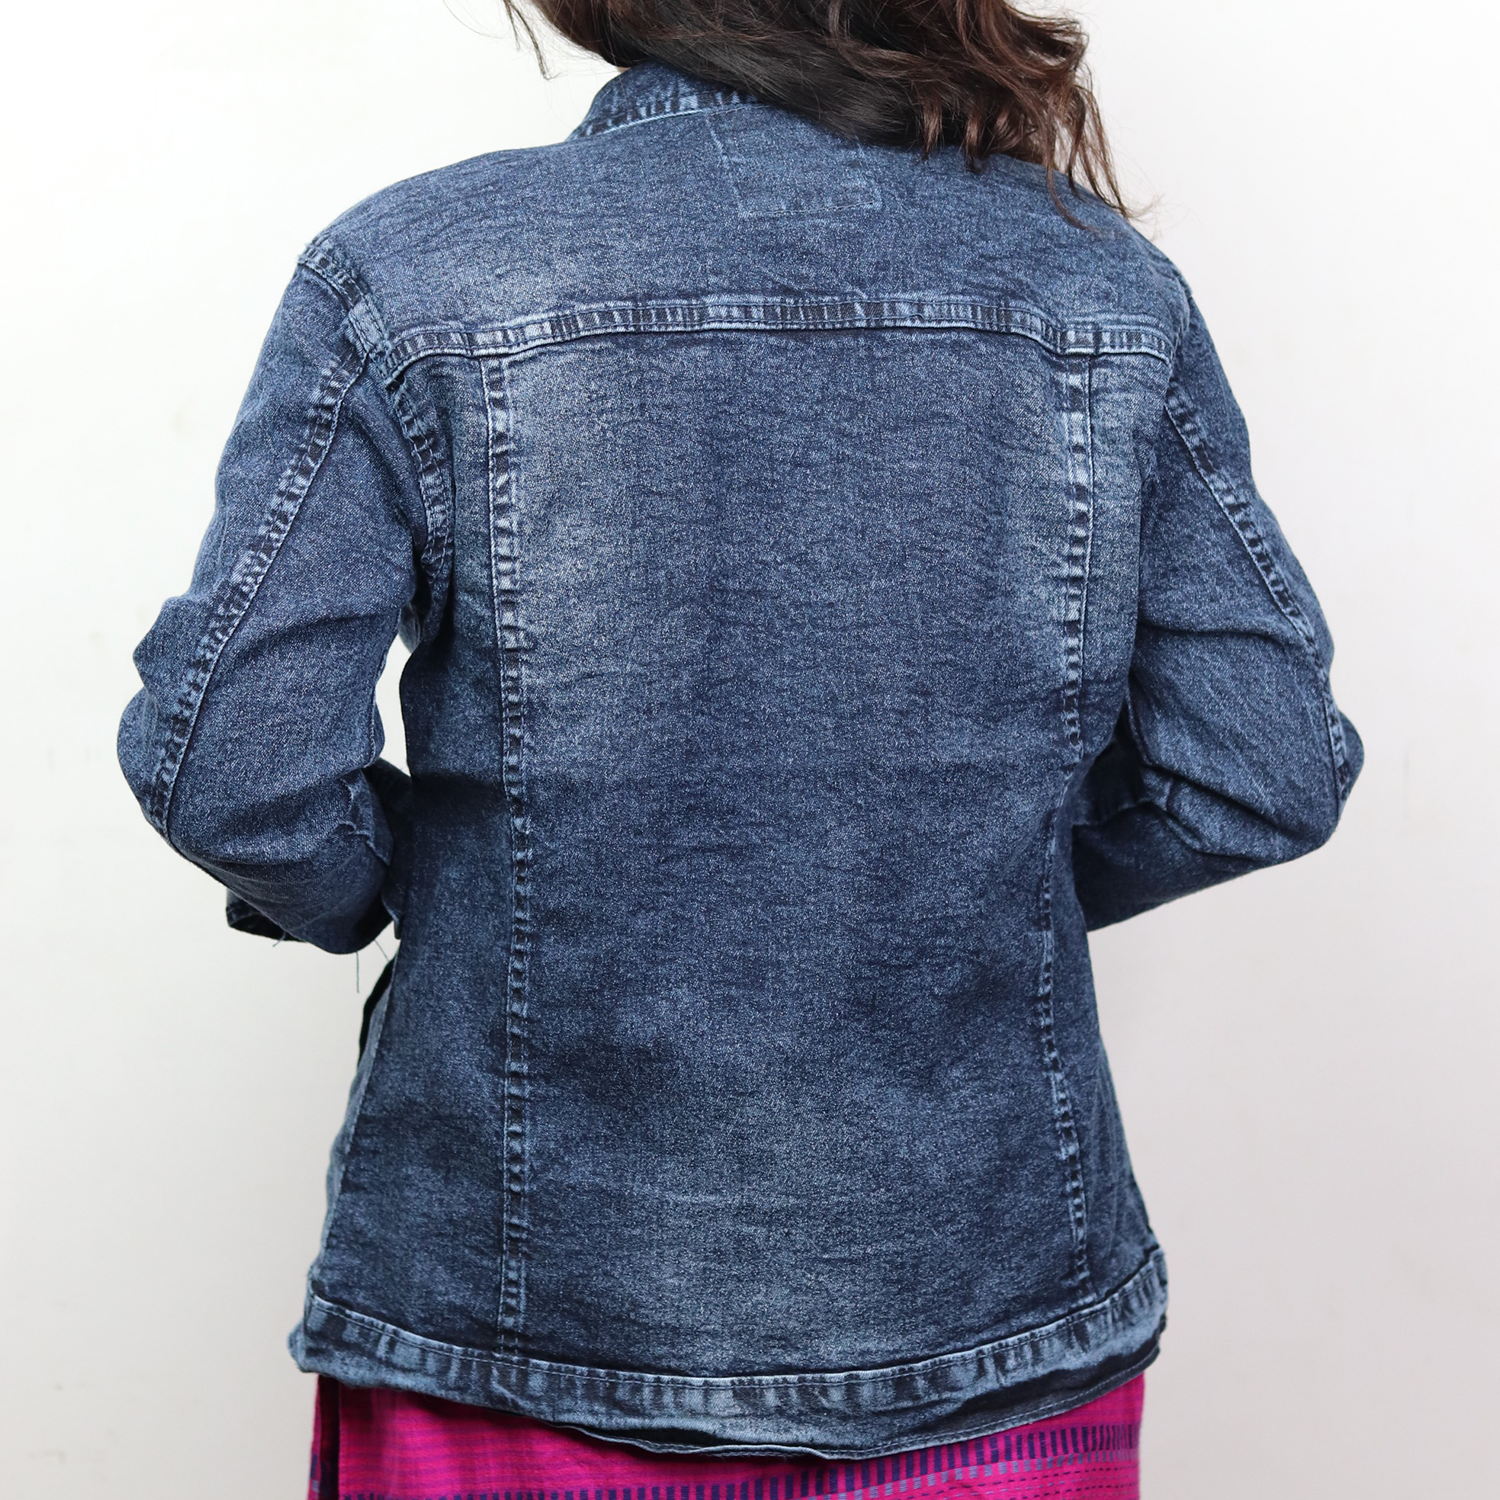 Washed Design Denim Jacket for Ladies